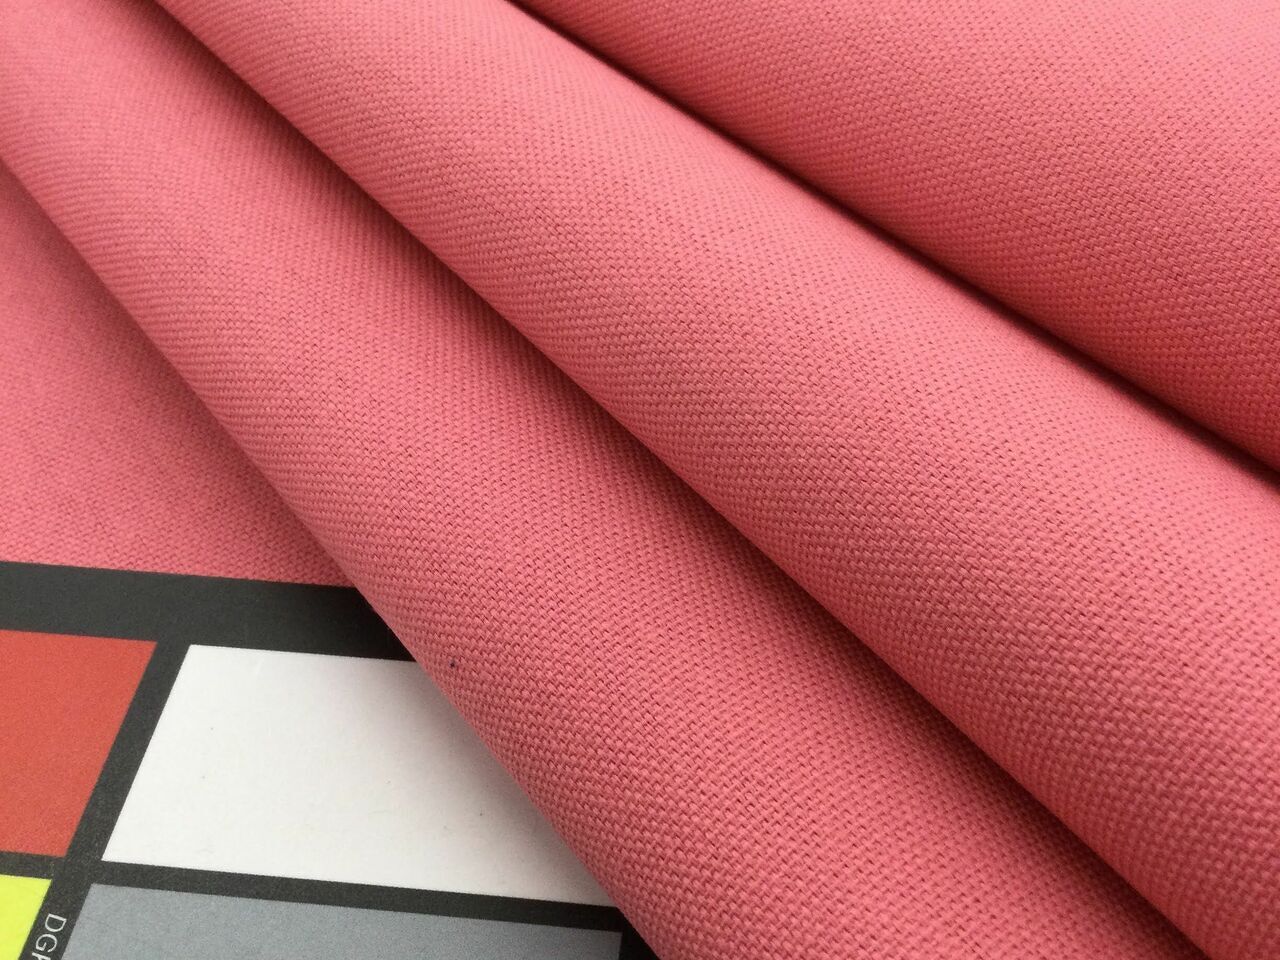 ROSE / DUSTY PINK Premium Plain 100% Cotton Canvas Fabric